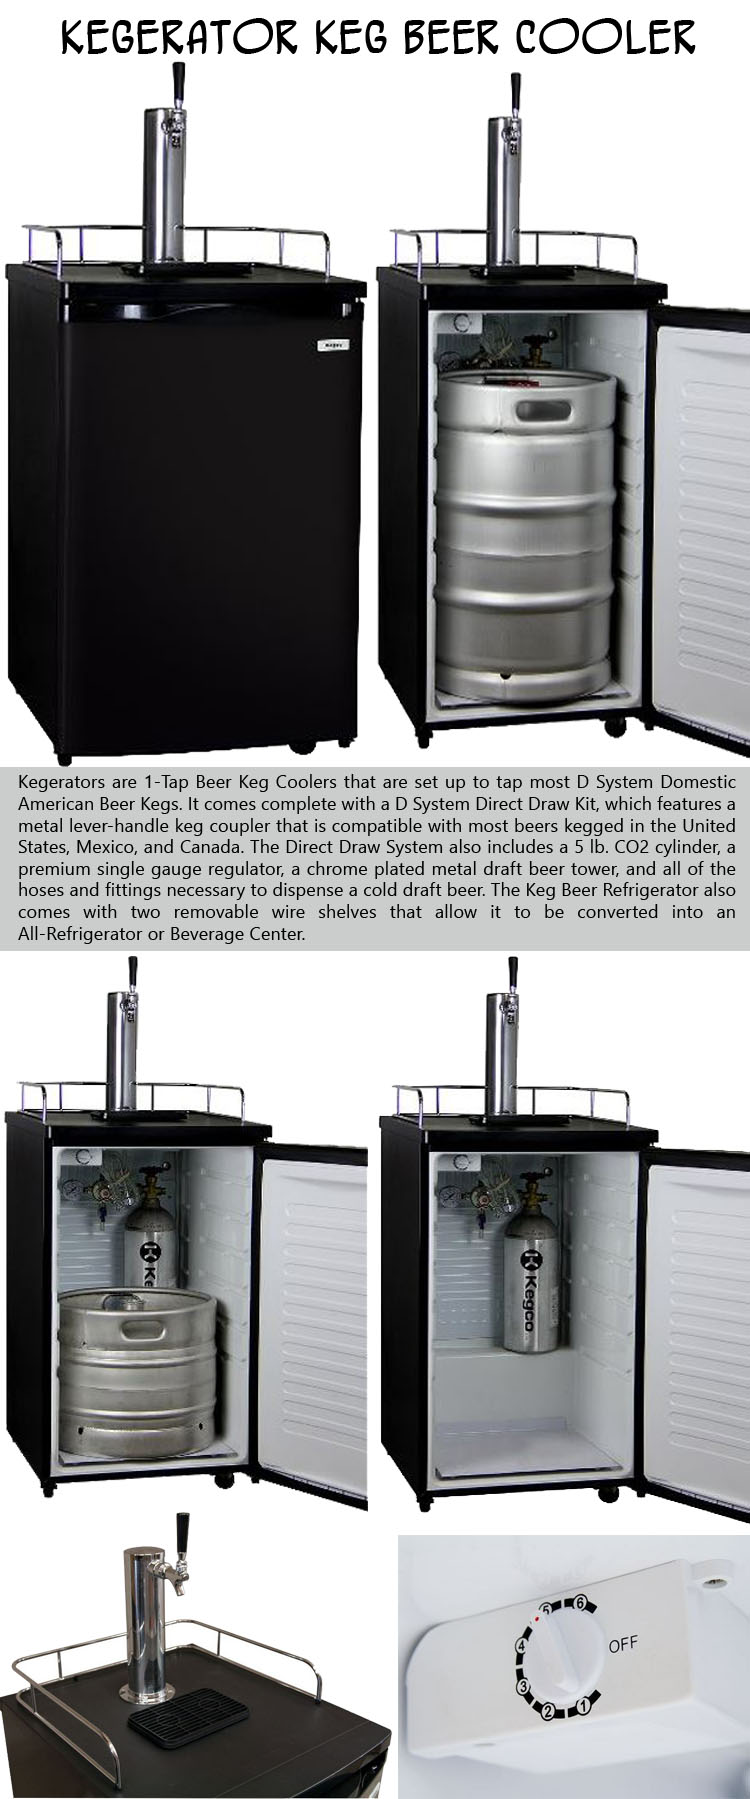 Kegerator Keg Beer Cooler